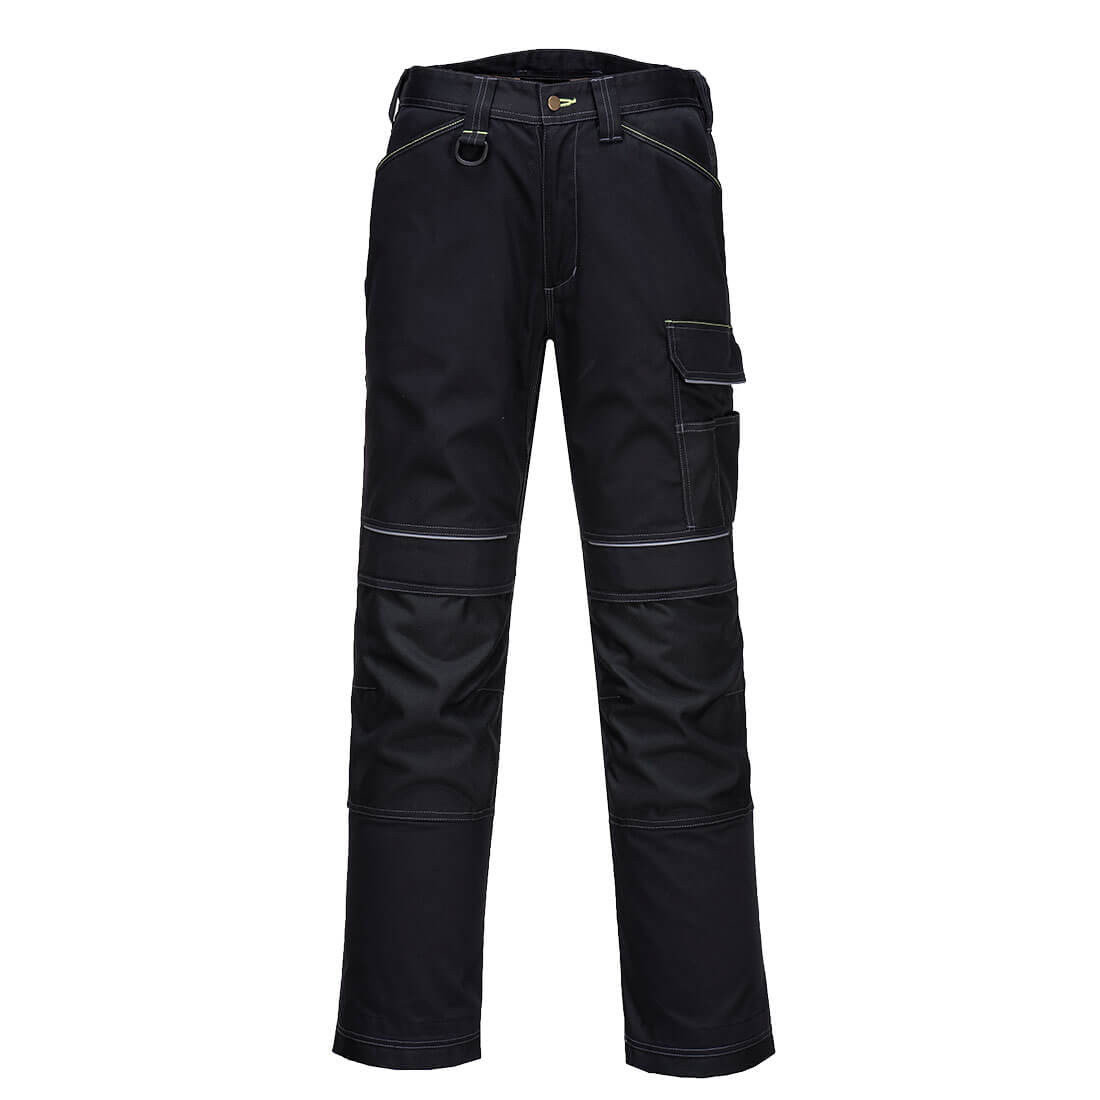 Pantalon de travail extensible PW3 pour Femmes - Les vêtements de protection